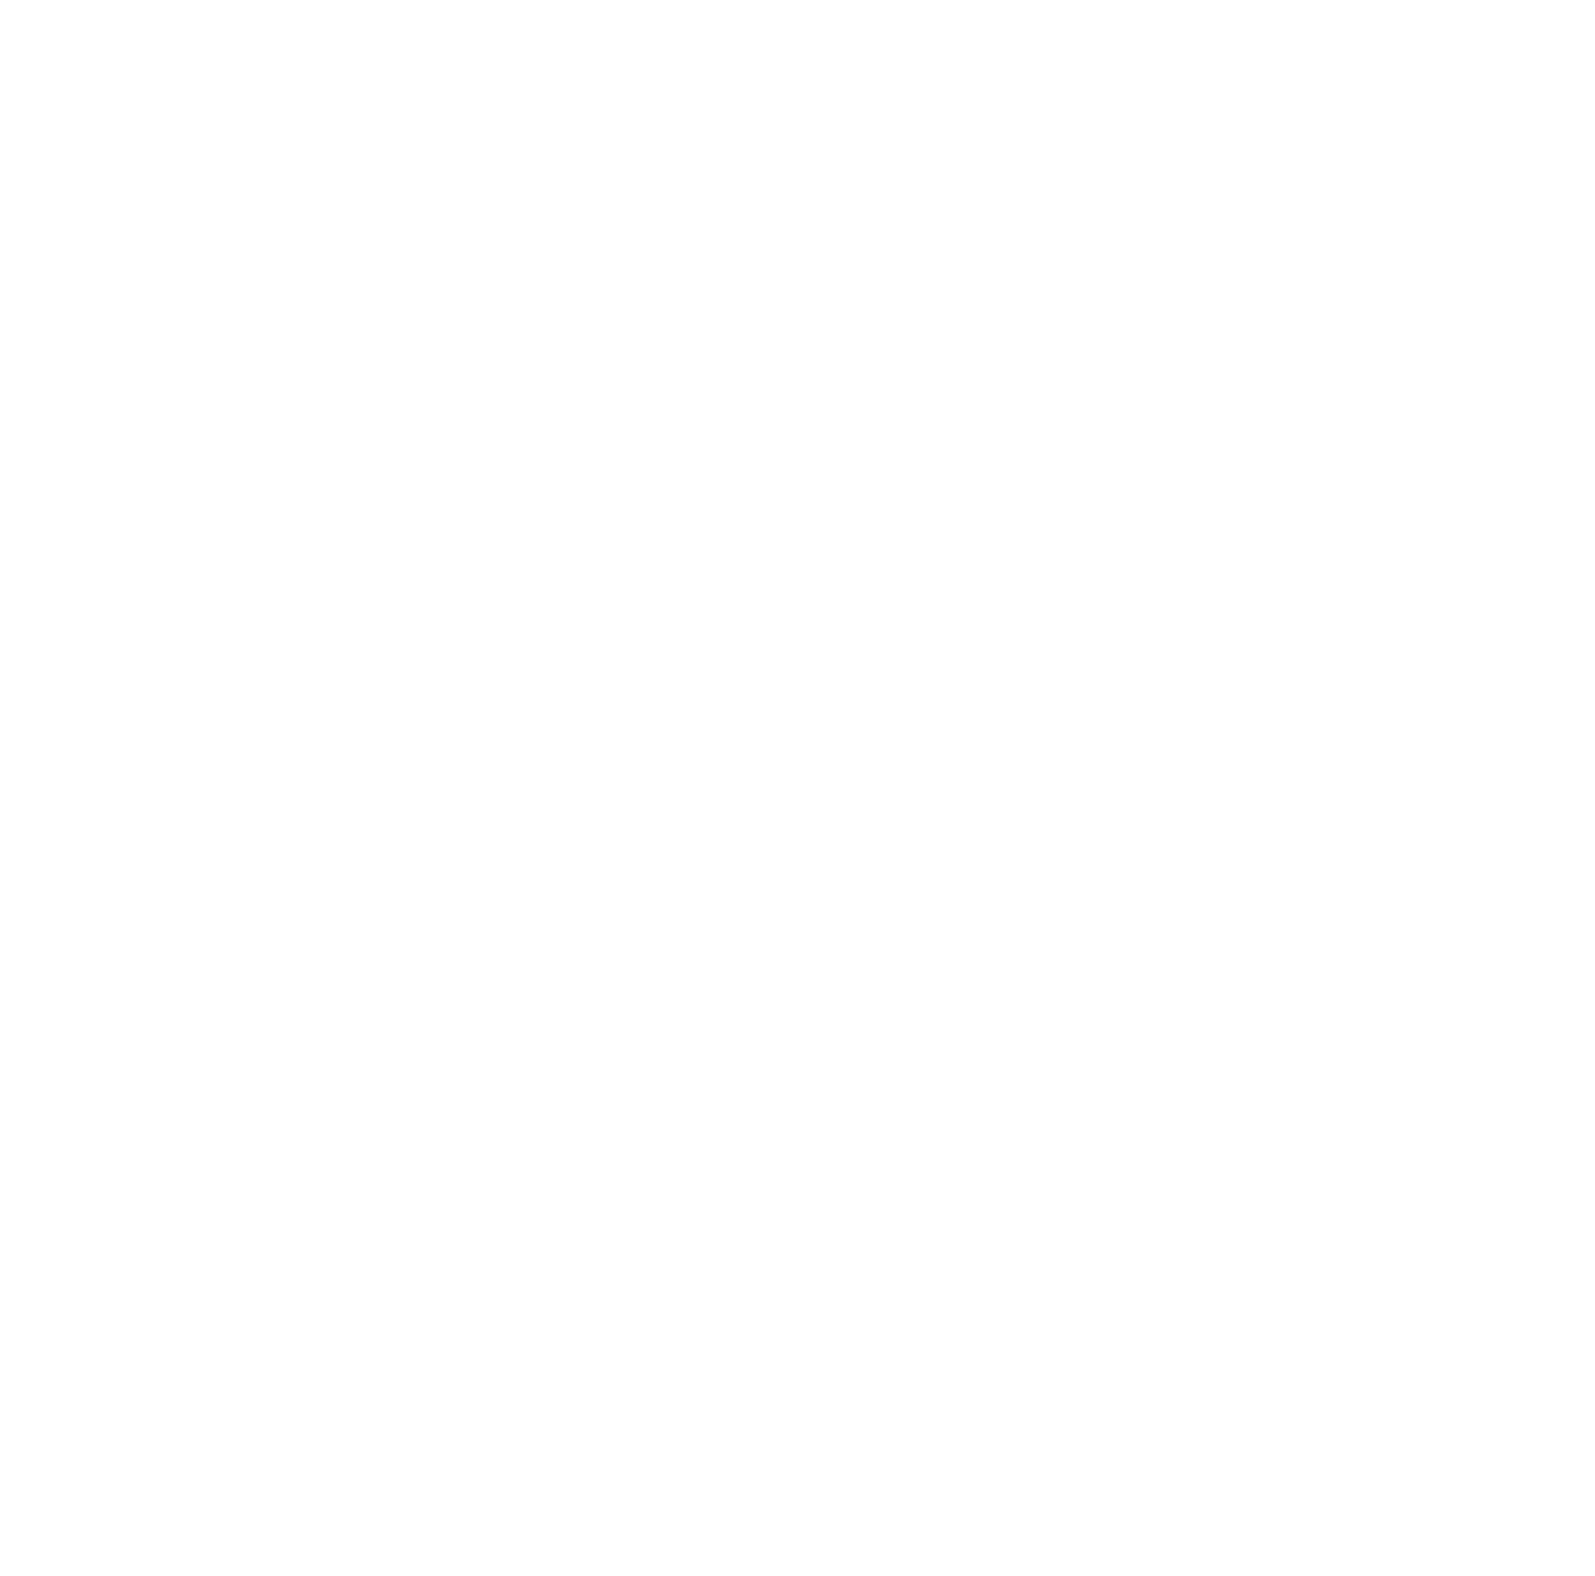 Auckland Airport logo pour fonds sombres (PNG transparent)